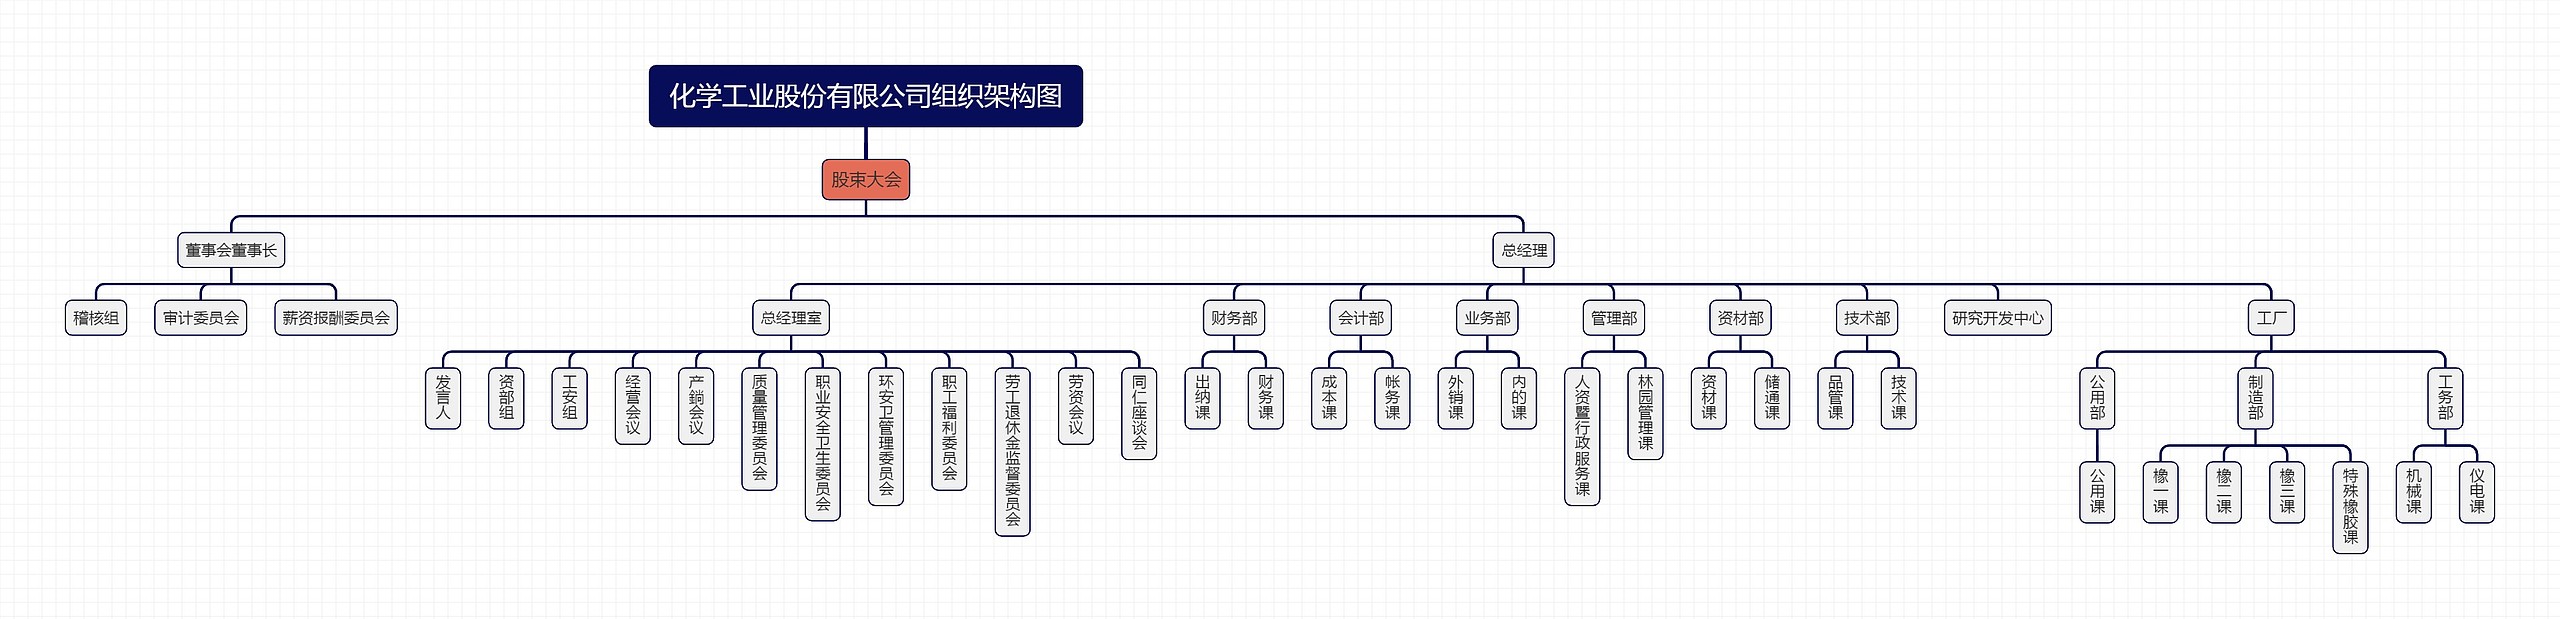 化学工业股份有限公司组织架构图